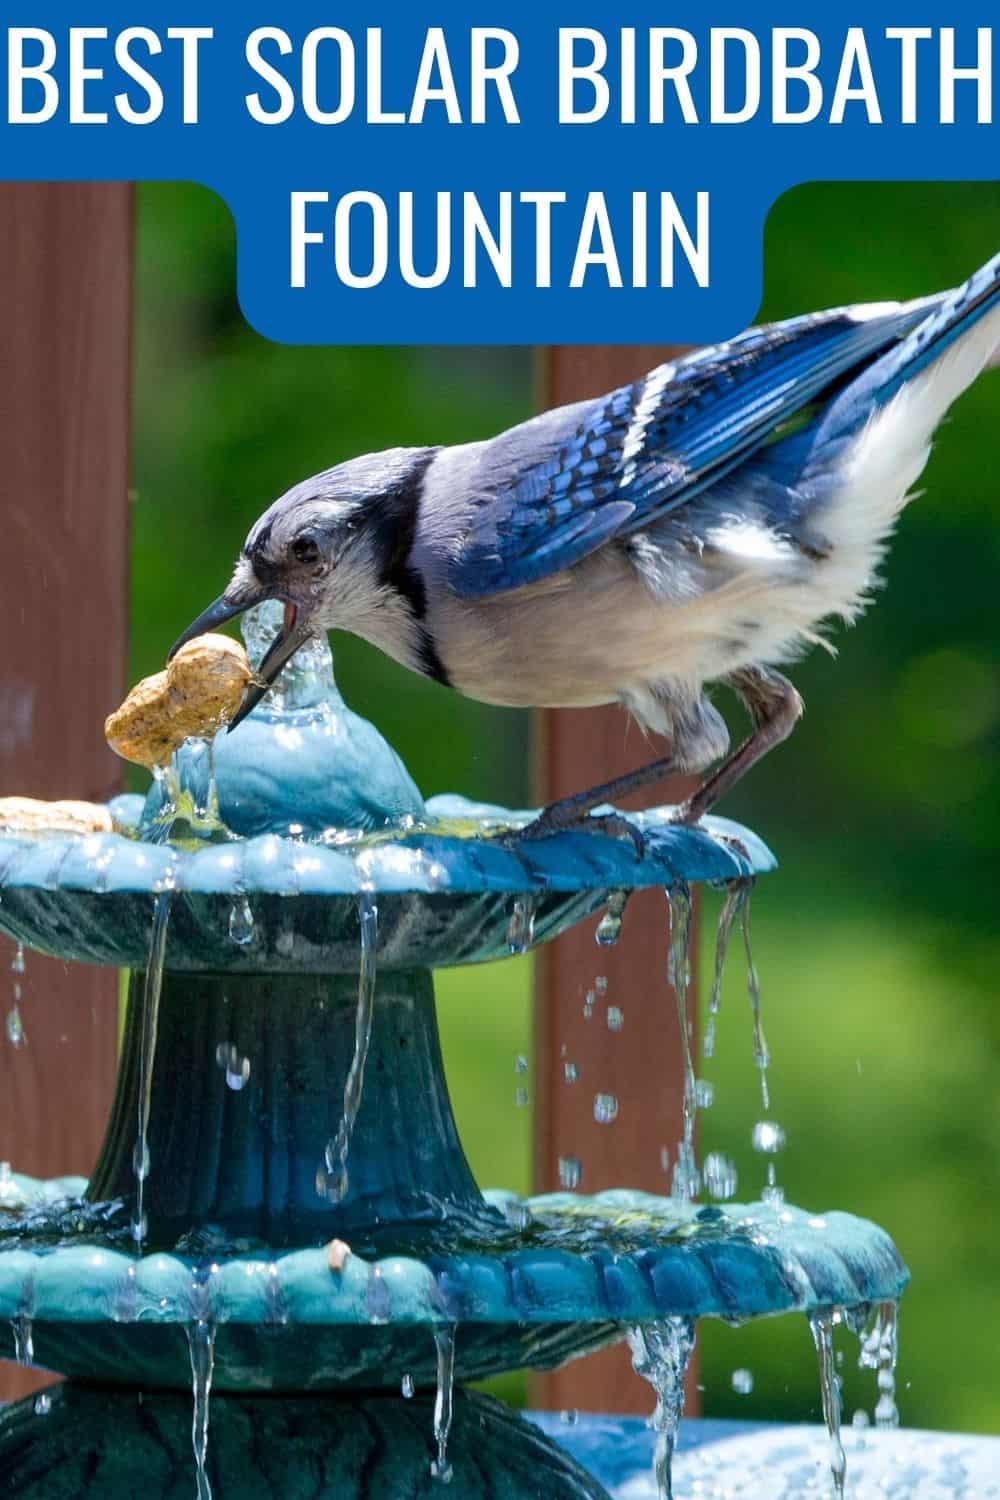 Best solar birdbath fountain